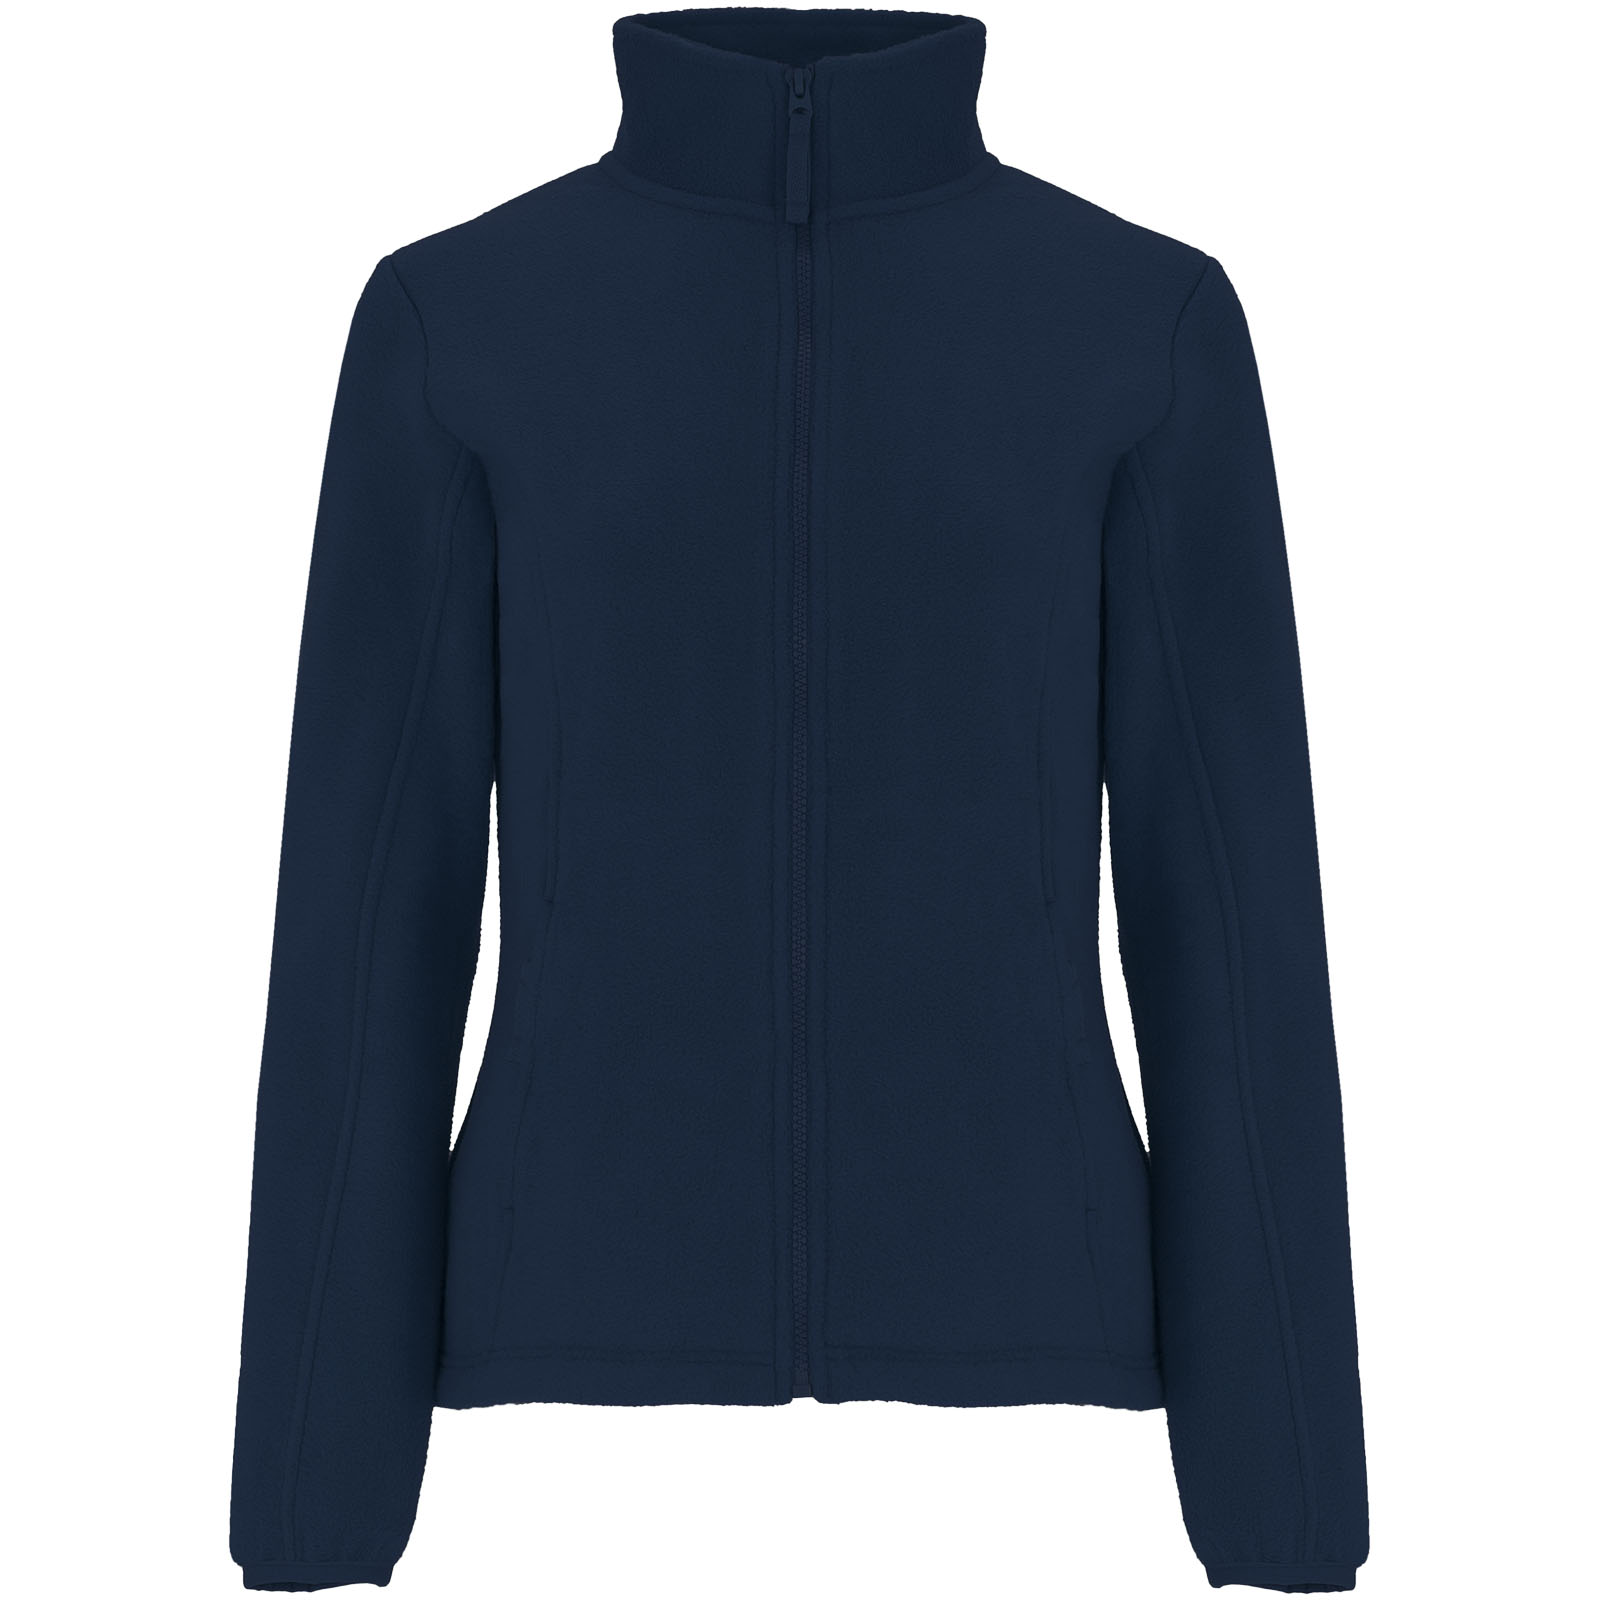 Advertising Fleece - Artic women's full zip fleece jacket